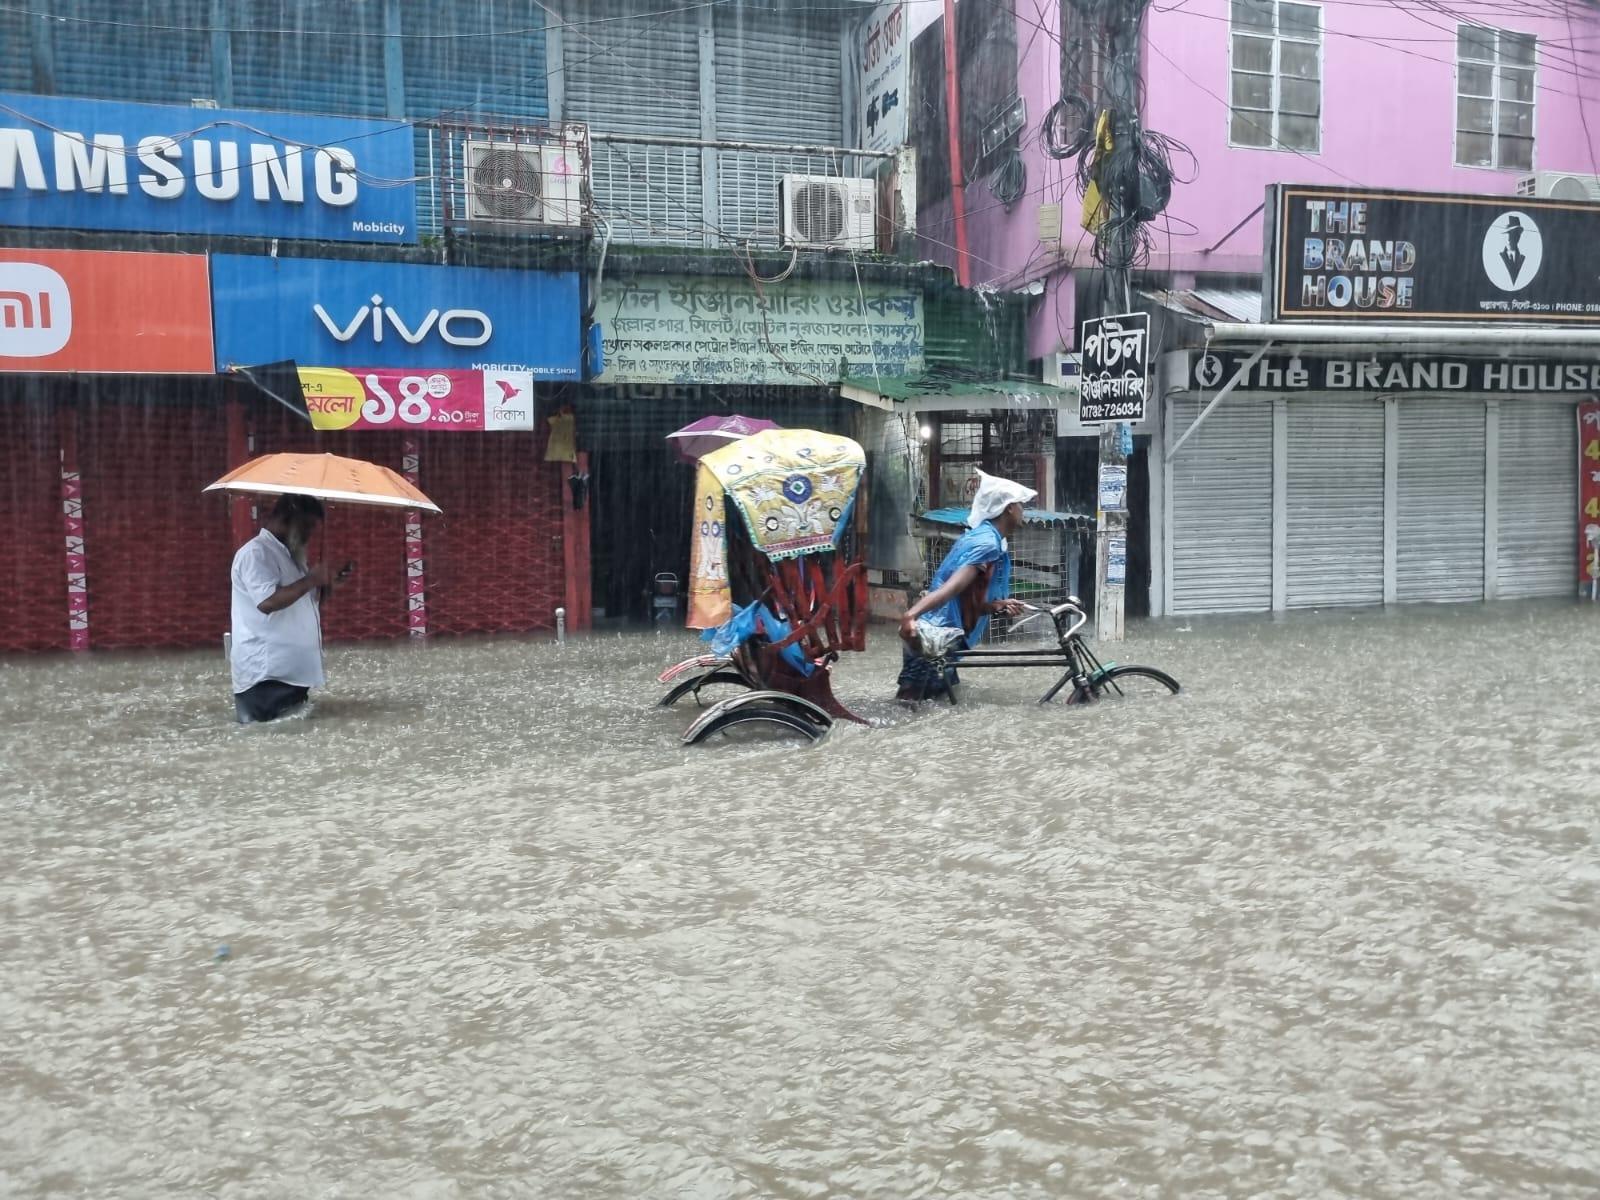 Un uomo tira il suo risciò sotto la pioggia battente in una strada allagata con negozi chiusi.  Dietro di lui cammina un uomo con un ombrello. L'acqua è alta fino alla vita.